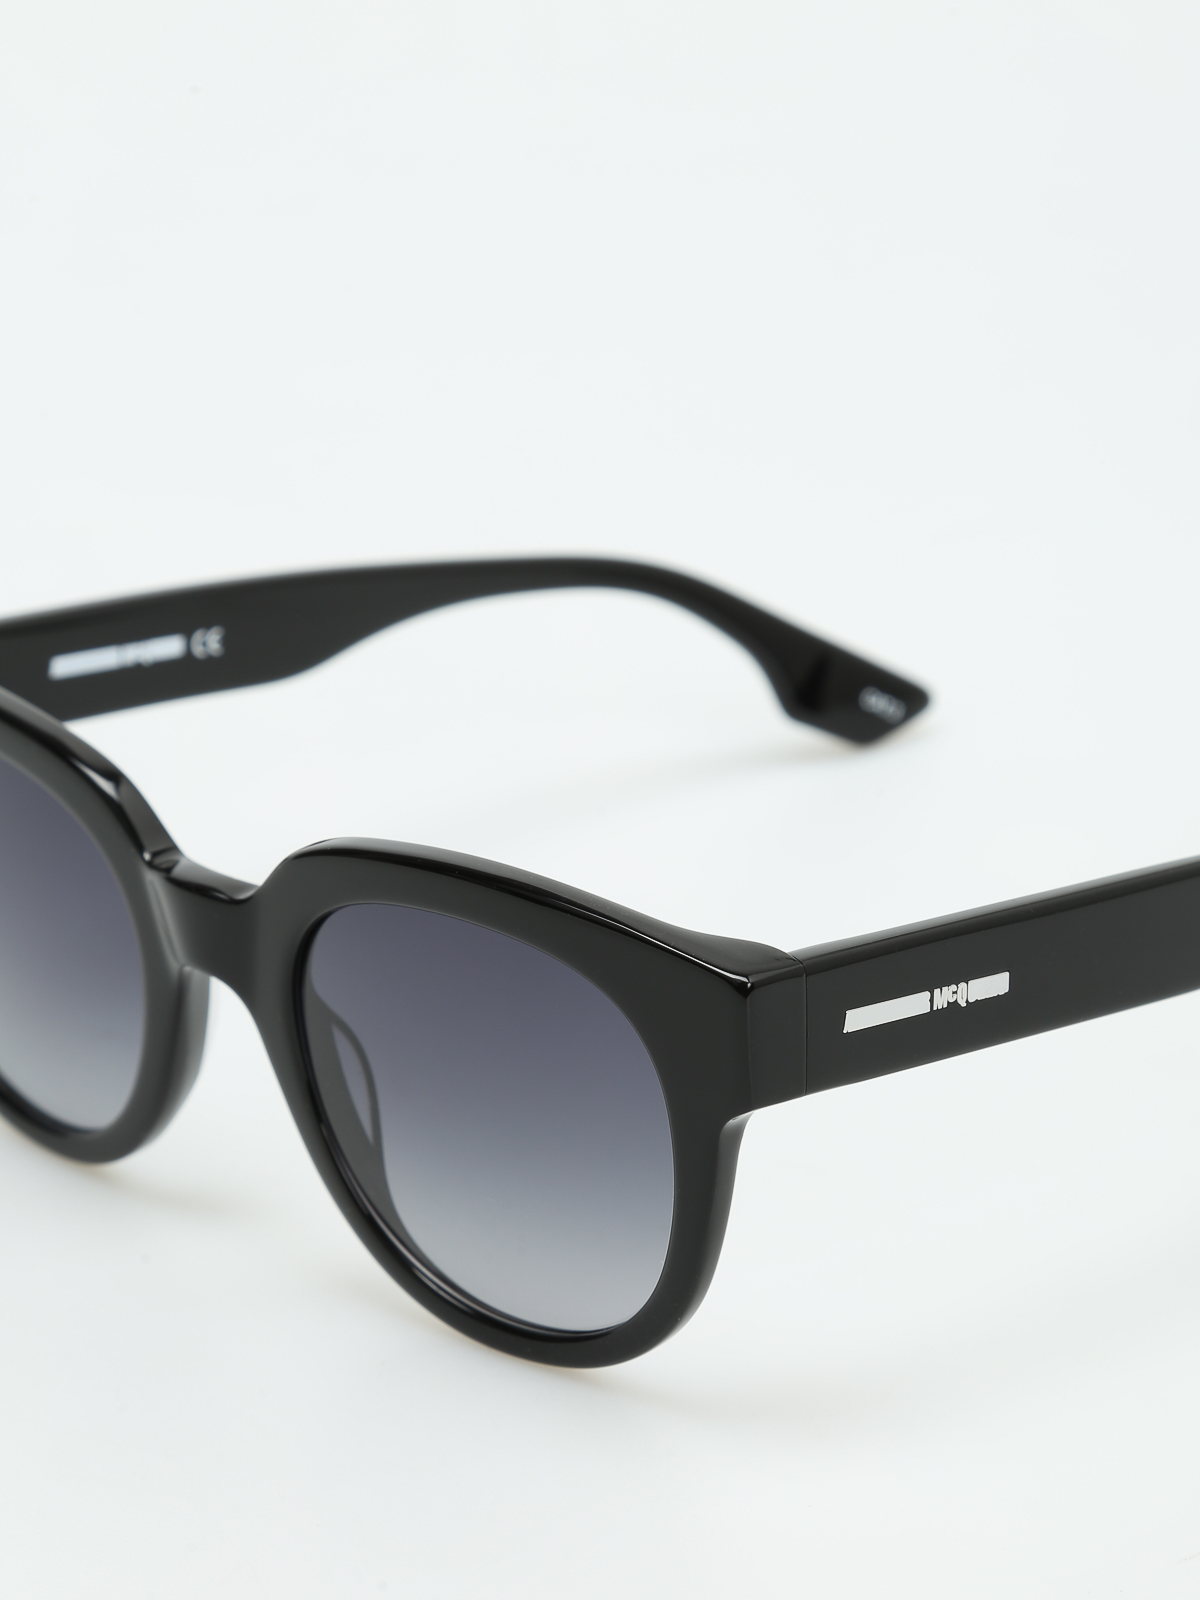 Sunglasses Mcq - Thick frame round sunglasses - MCQMCQUEENMQ0068S001